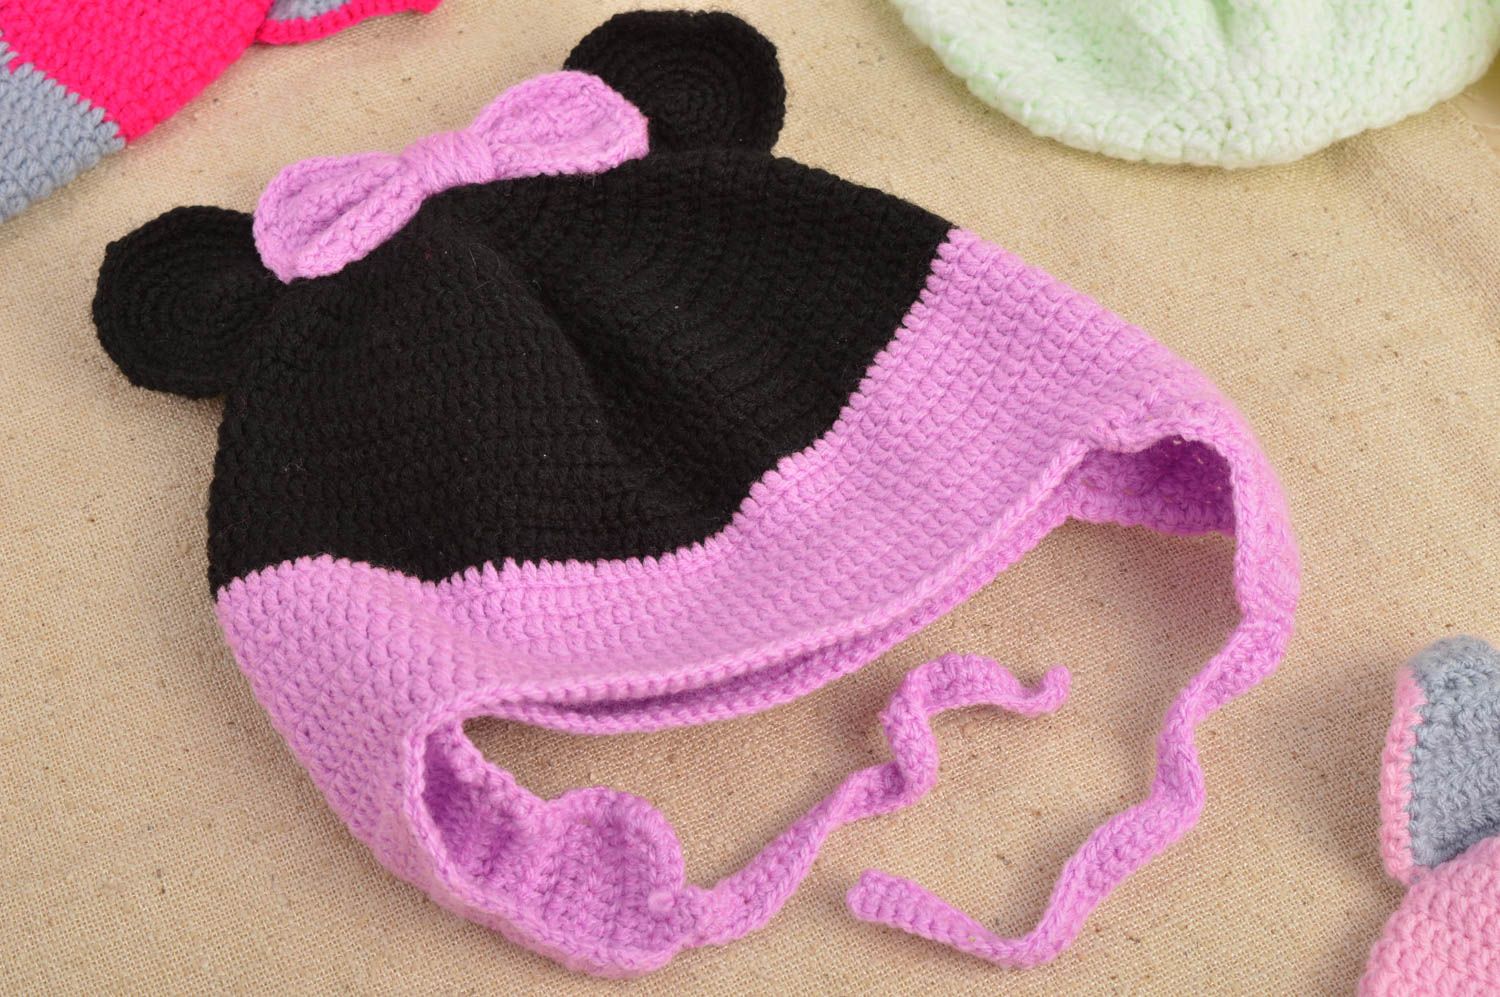 Handmade warm baby hat crochet hat designs winter head accessories ideas photo 1